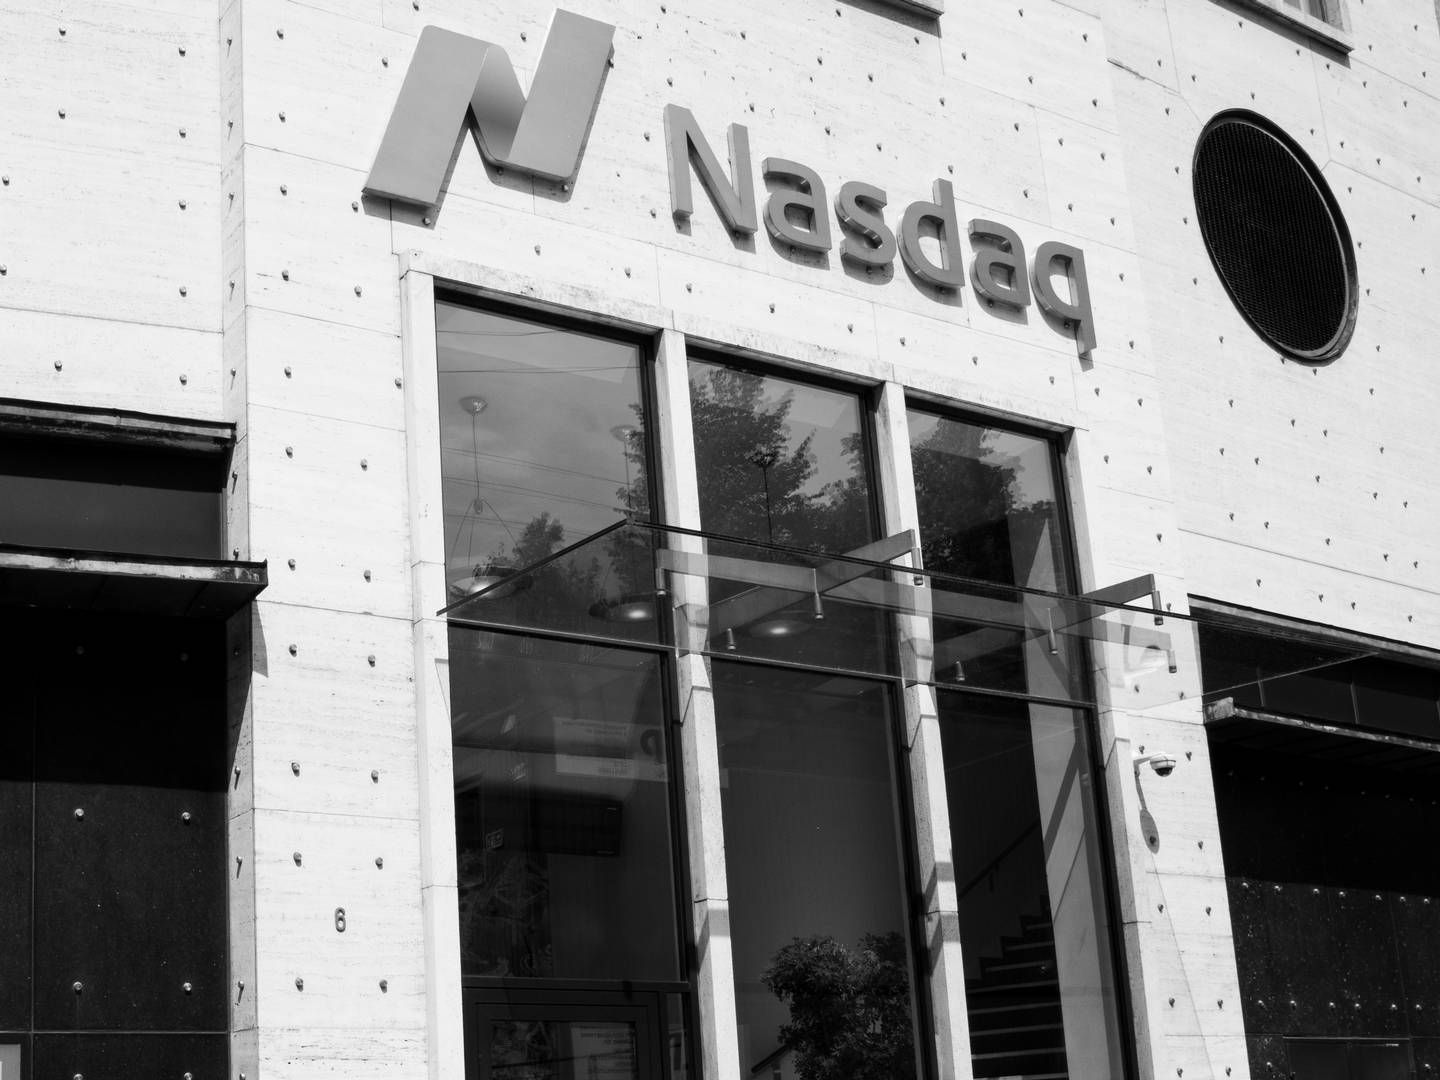 First North er en vækstbørs under Nasdaq, som også står bag fondsbørsen i København. I løbet af de sidste to år har en række danske selskaber forladt vækstbørsen | Foto: Christian Lykking